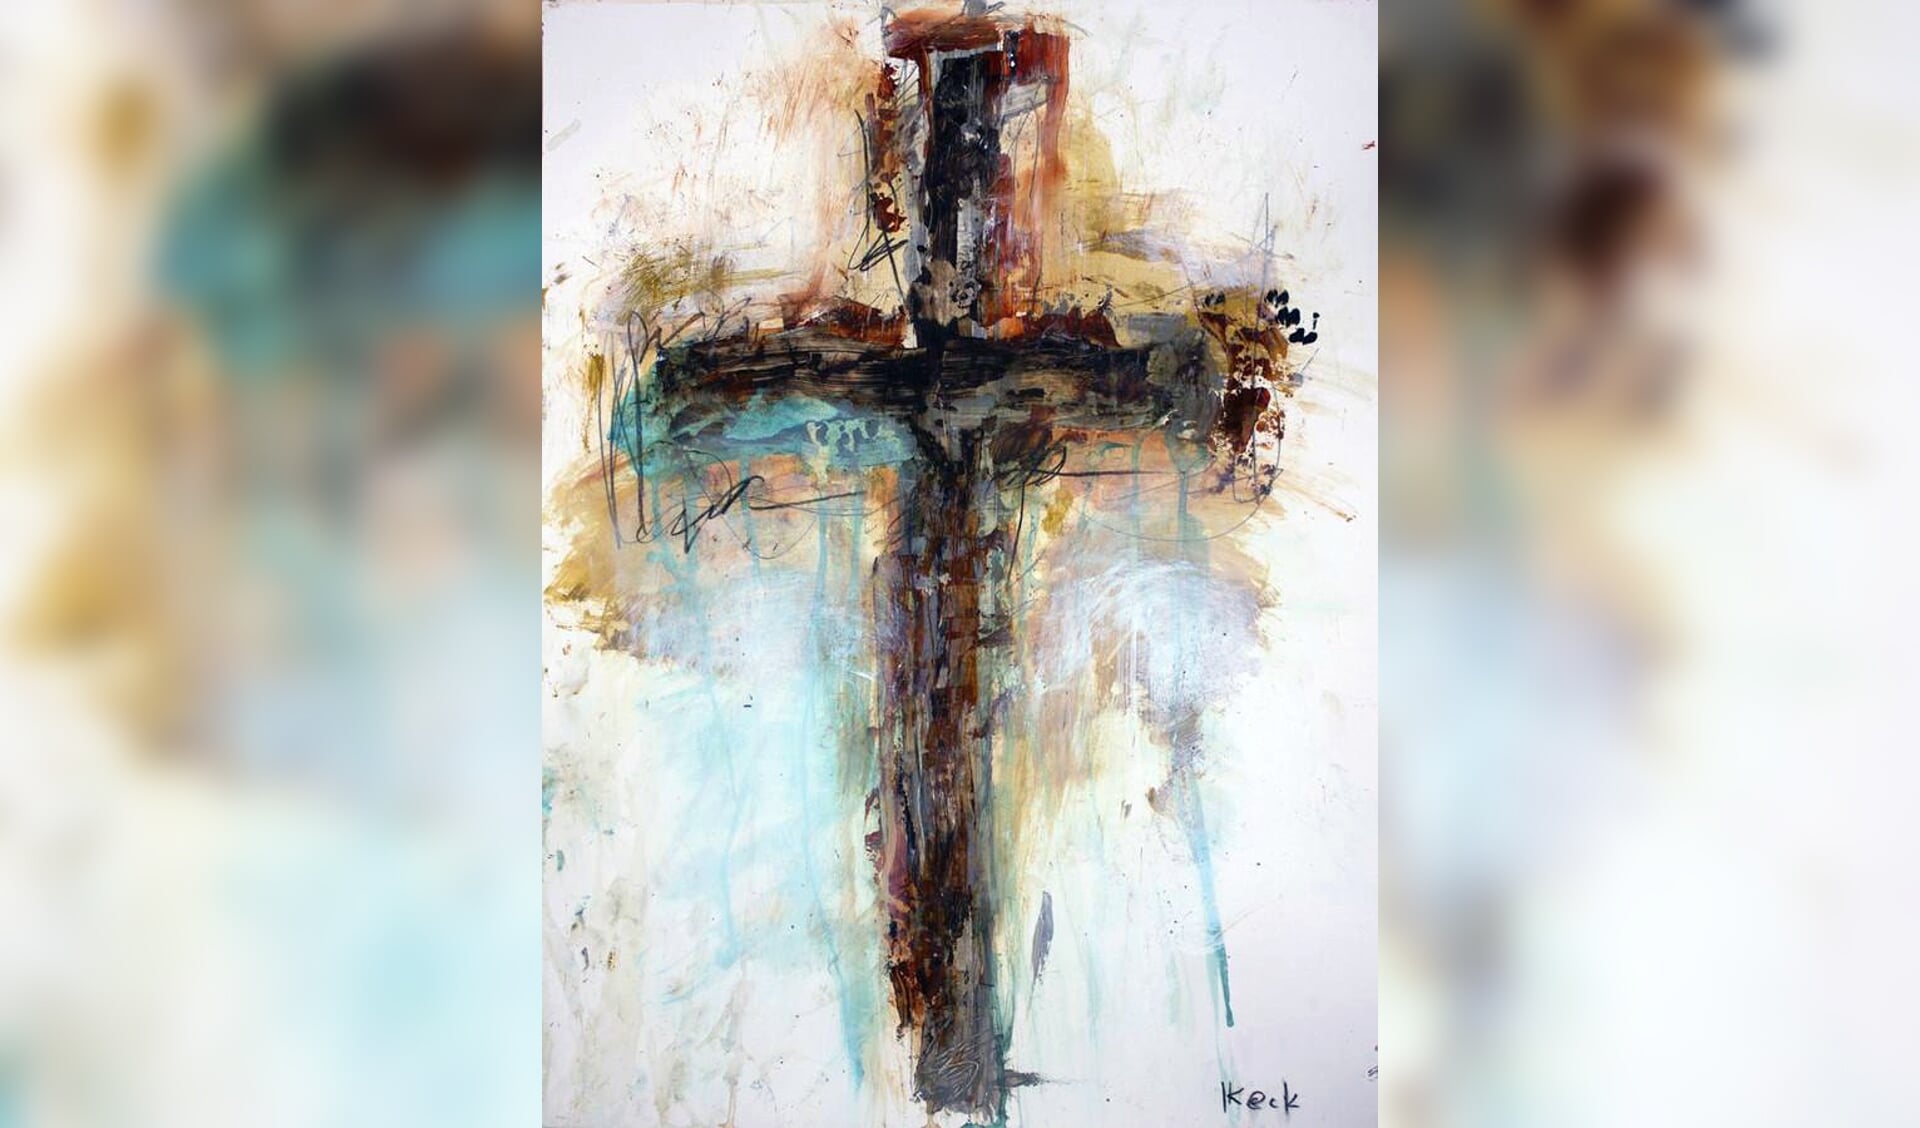 Het thema, Reacties op Jezus’ lijden, belicht met een Cross Art Painting van Michel Keck